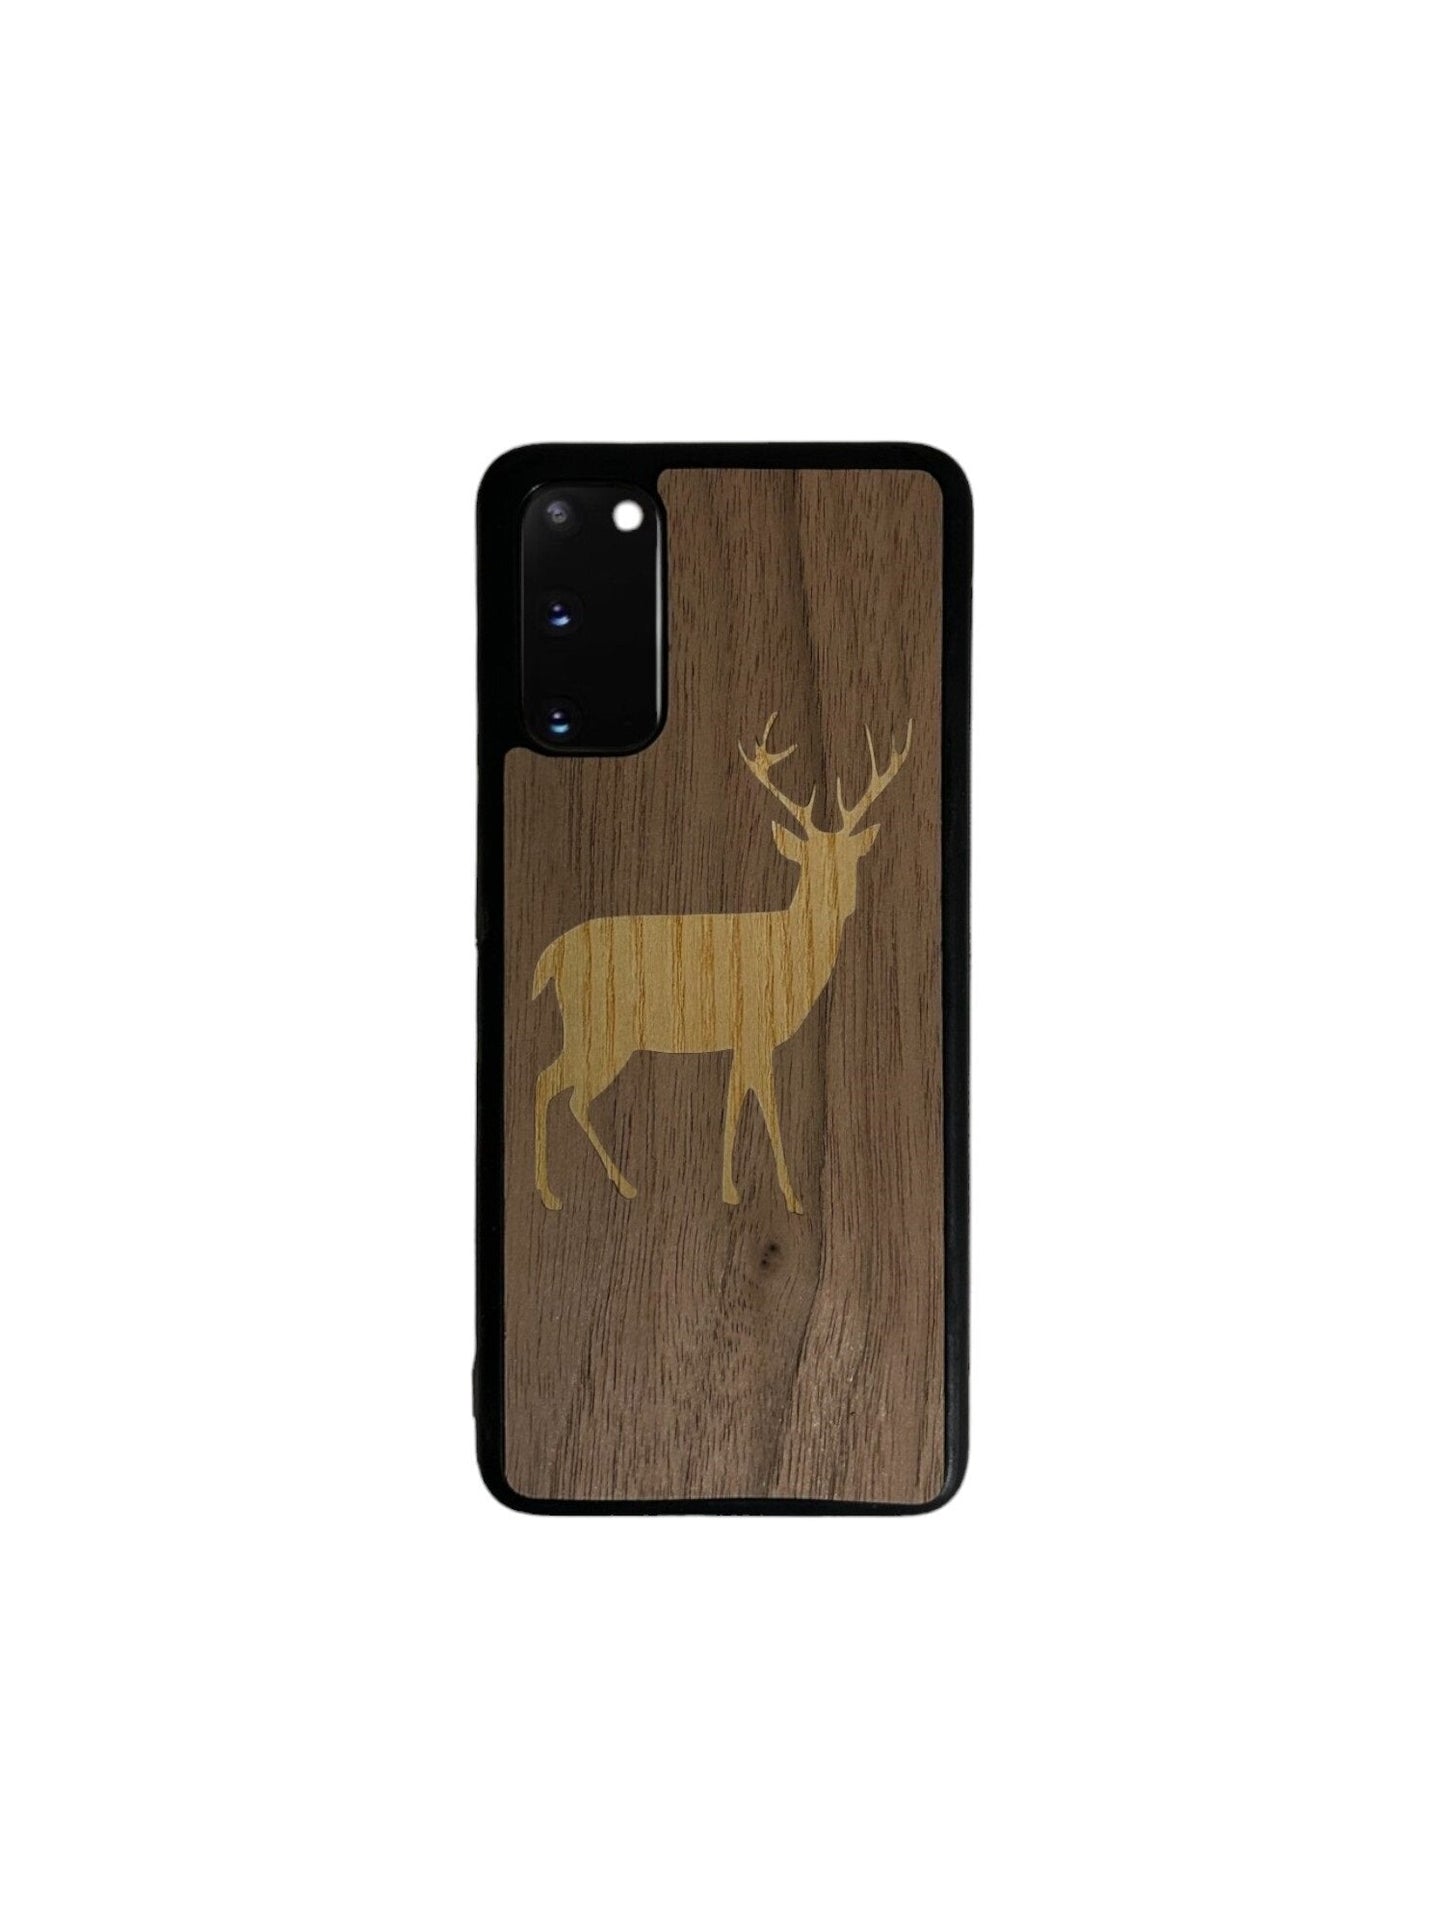 Samsung Galaxy Note Case - Fir Deer